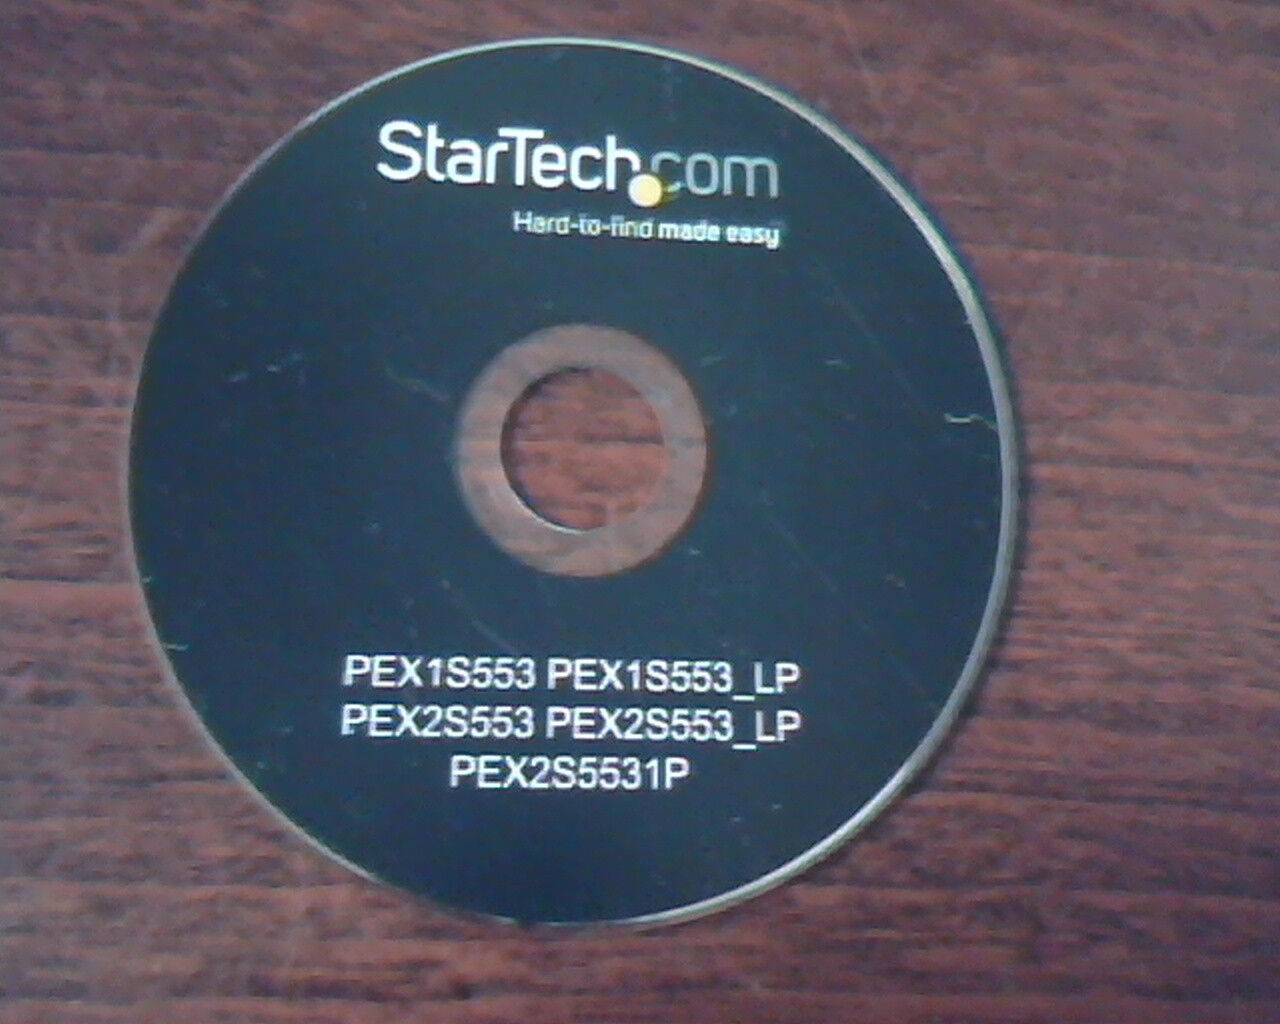 StarTech.com Hard-to-find made easy PEX1S553 PEX2S553 PEX2S5531P PEX1S553_LP CD